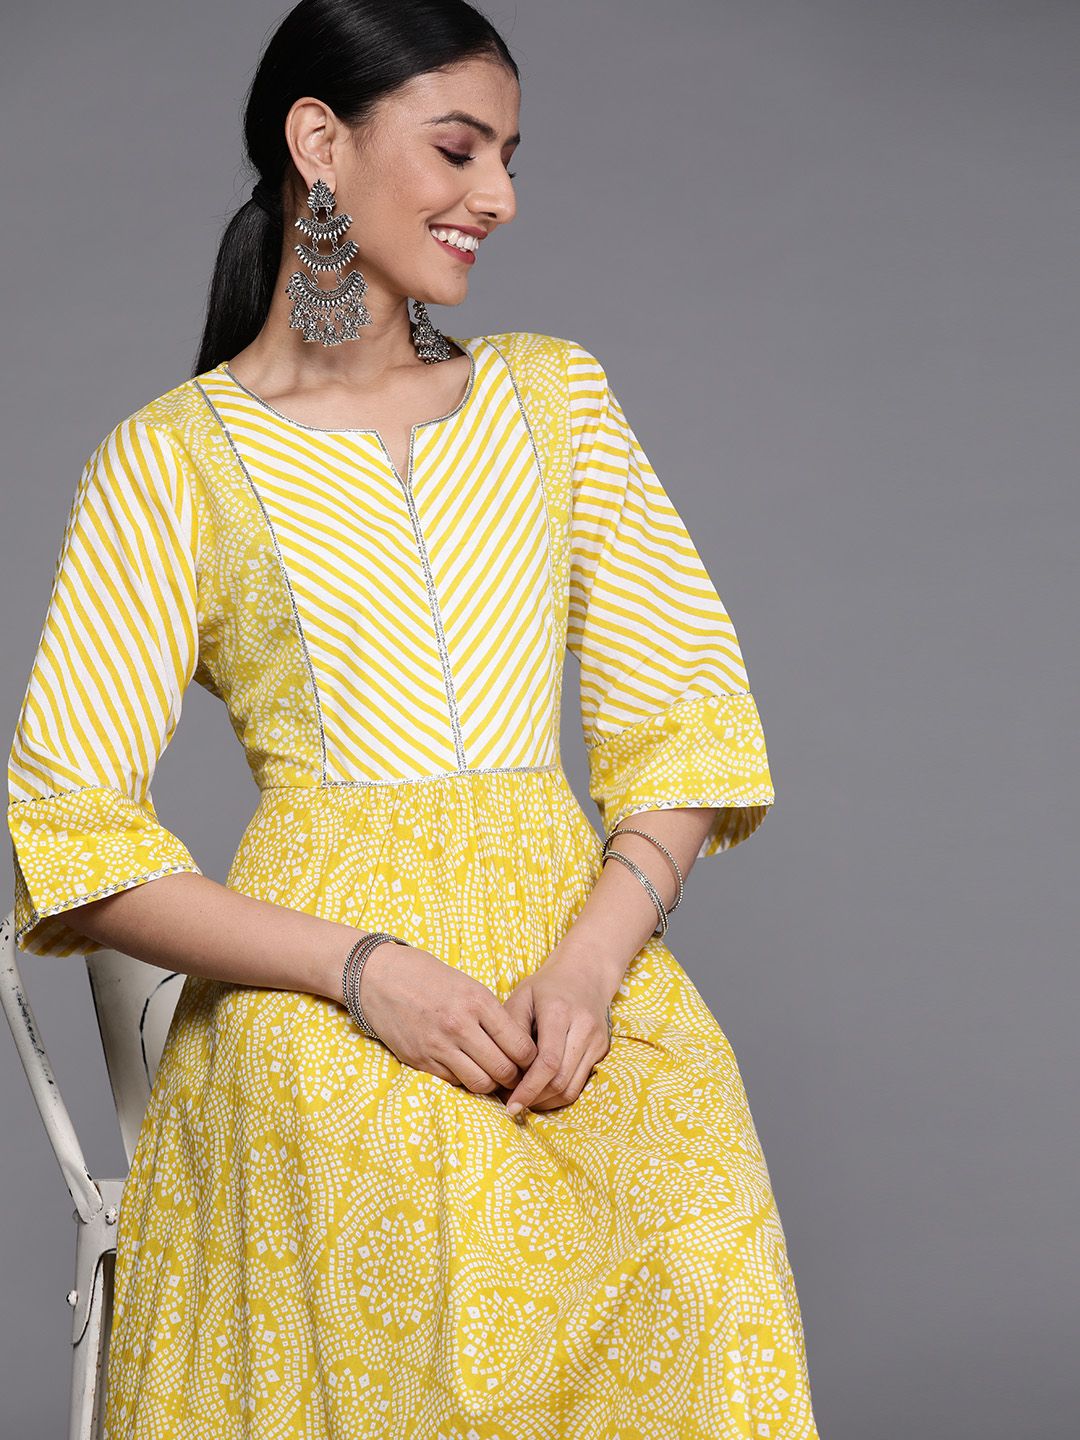 Libas Yellow & White Ethnic Printed Cotton Maxi Dress Price in India